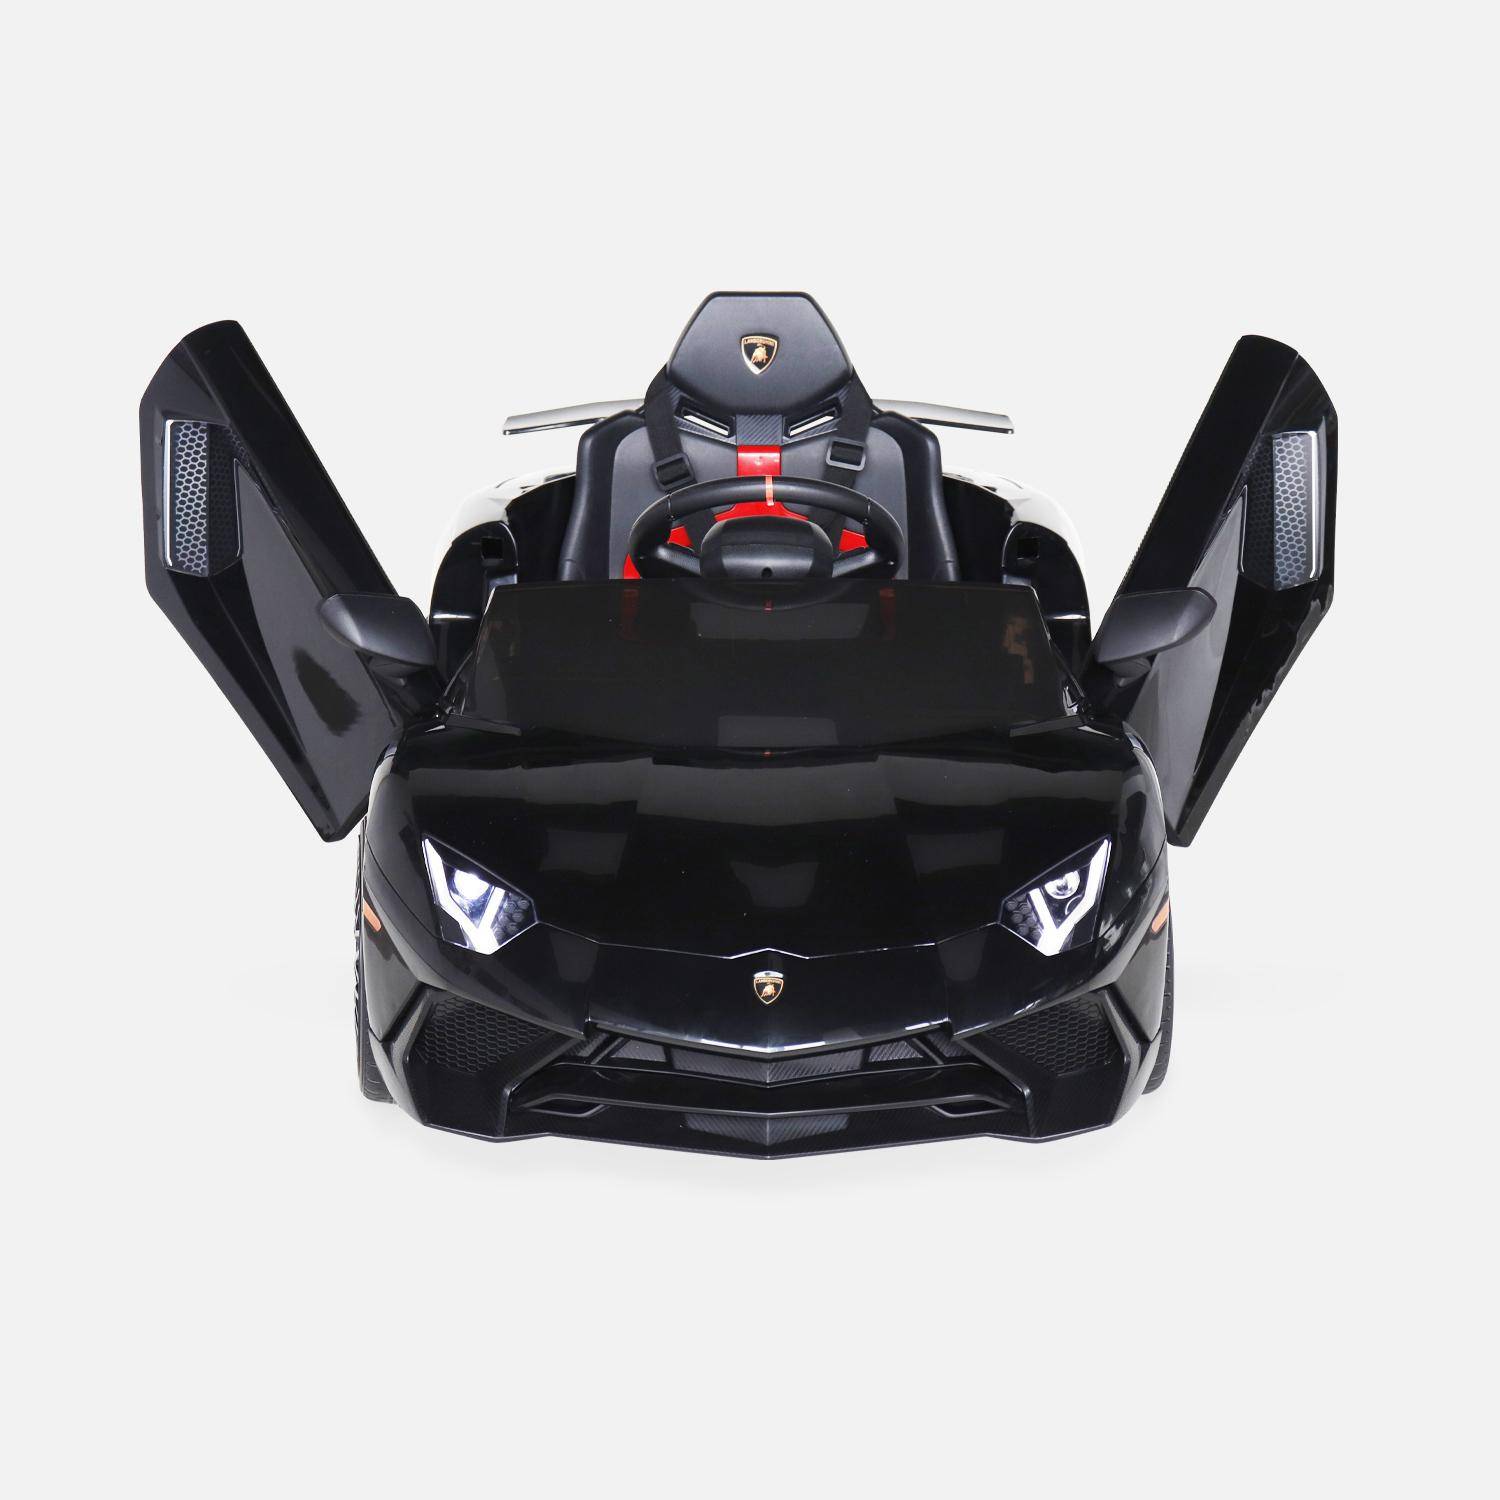 12V Lamborghini elektrische kinderauto, zwart, 1 zitplaats, met radio, afstandsbediening, MP3, USB-poort en functionele koplampen Photo6